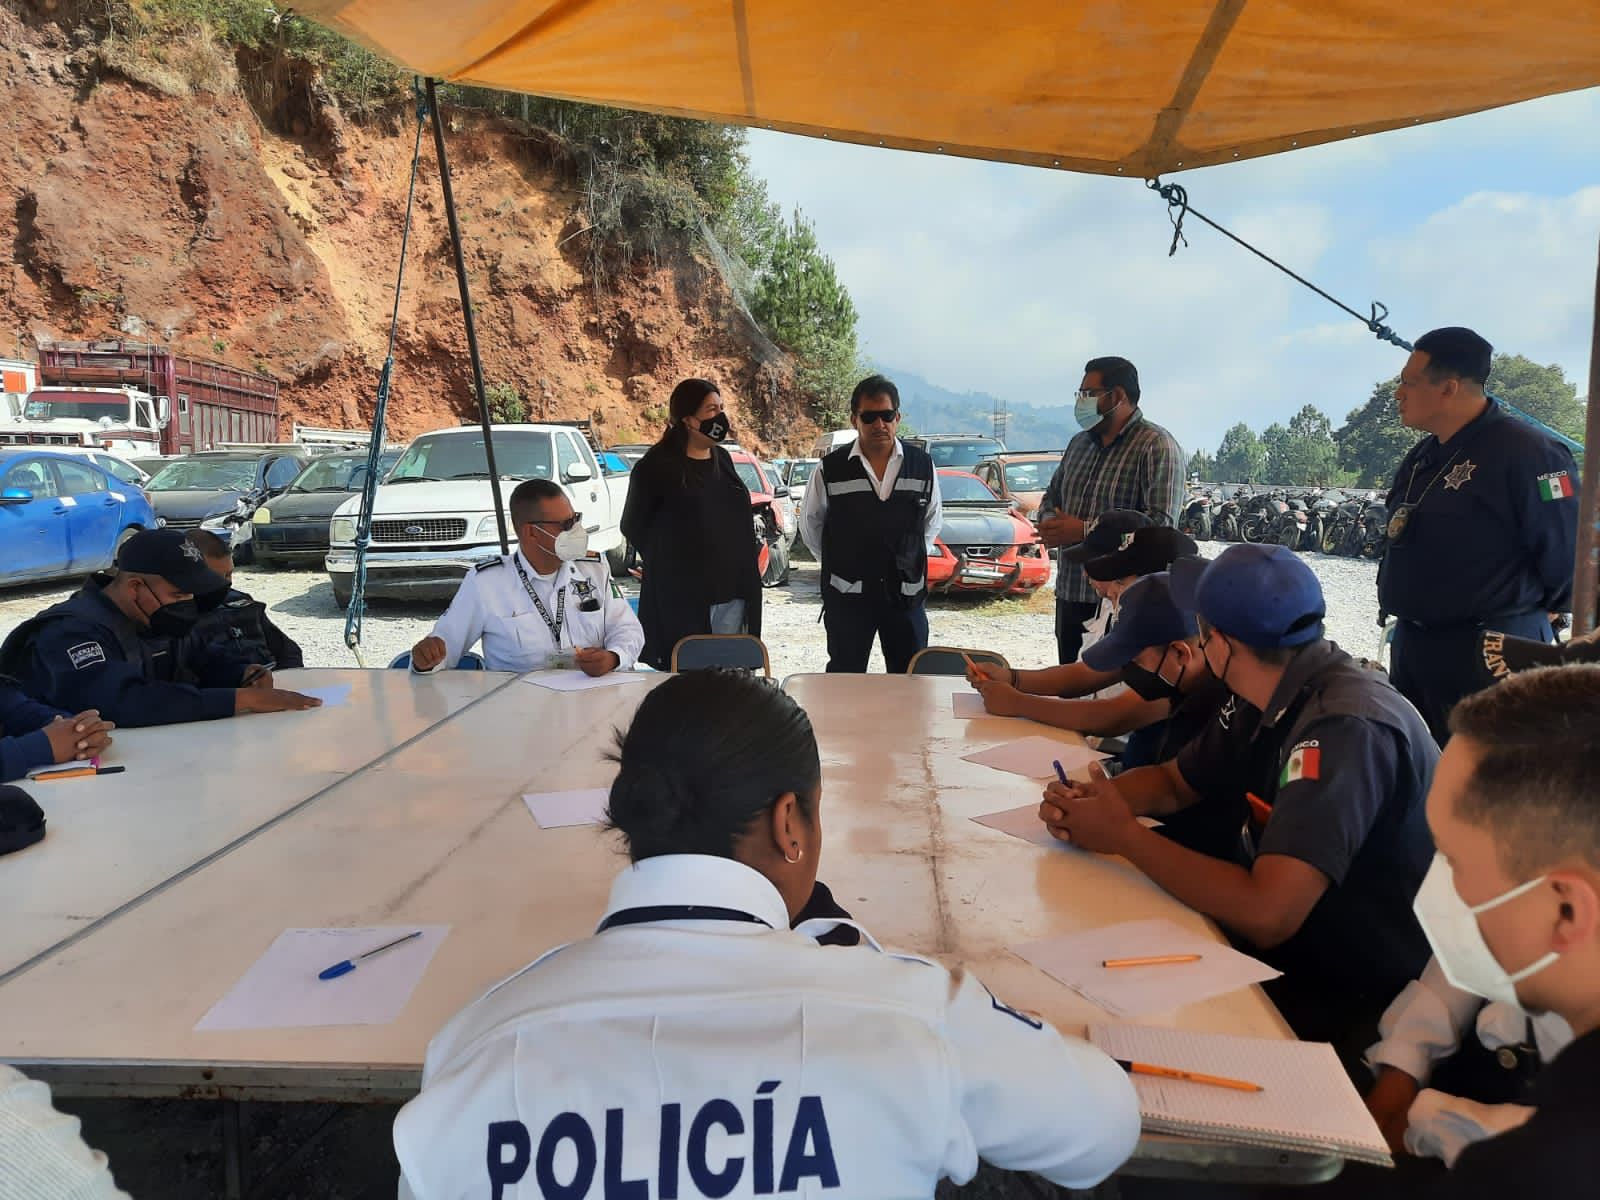 Seguridad Pública en Teziutlán inicia programa “COMPRA DE AUTO SEGURO”